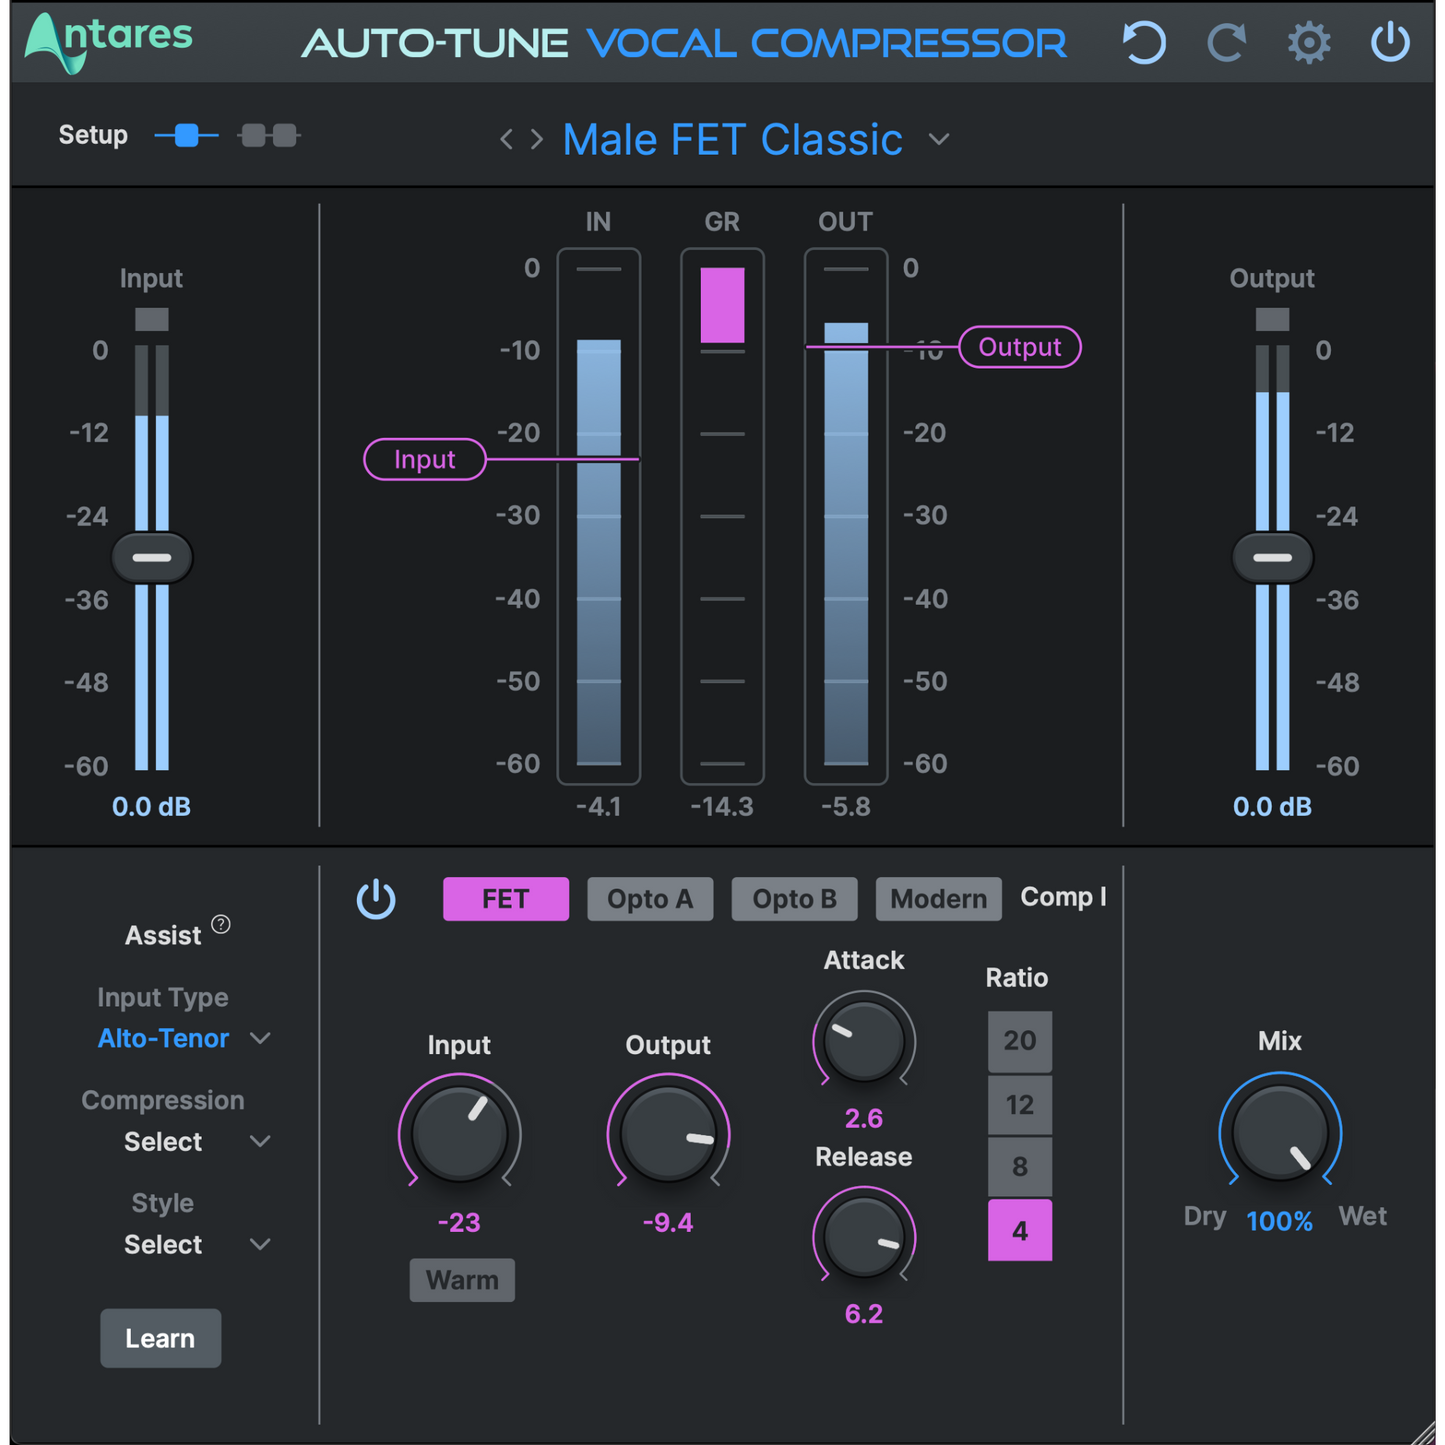 Antares Auto-Tune Vocal Compressor Plug-in